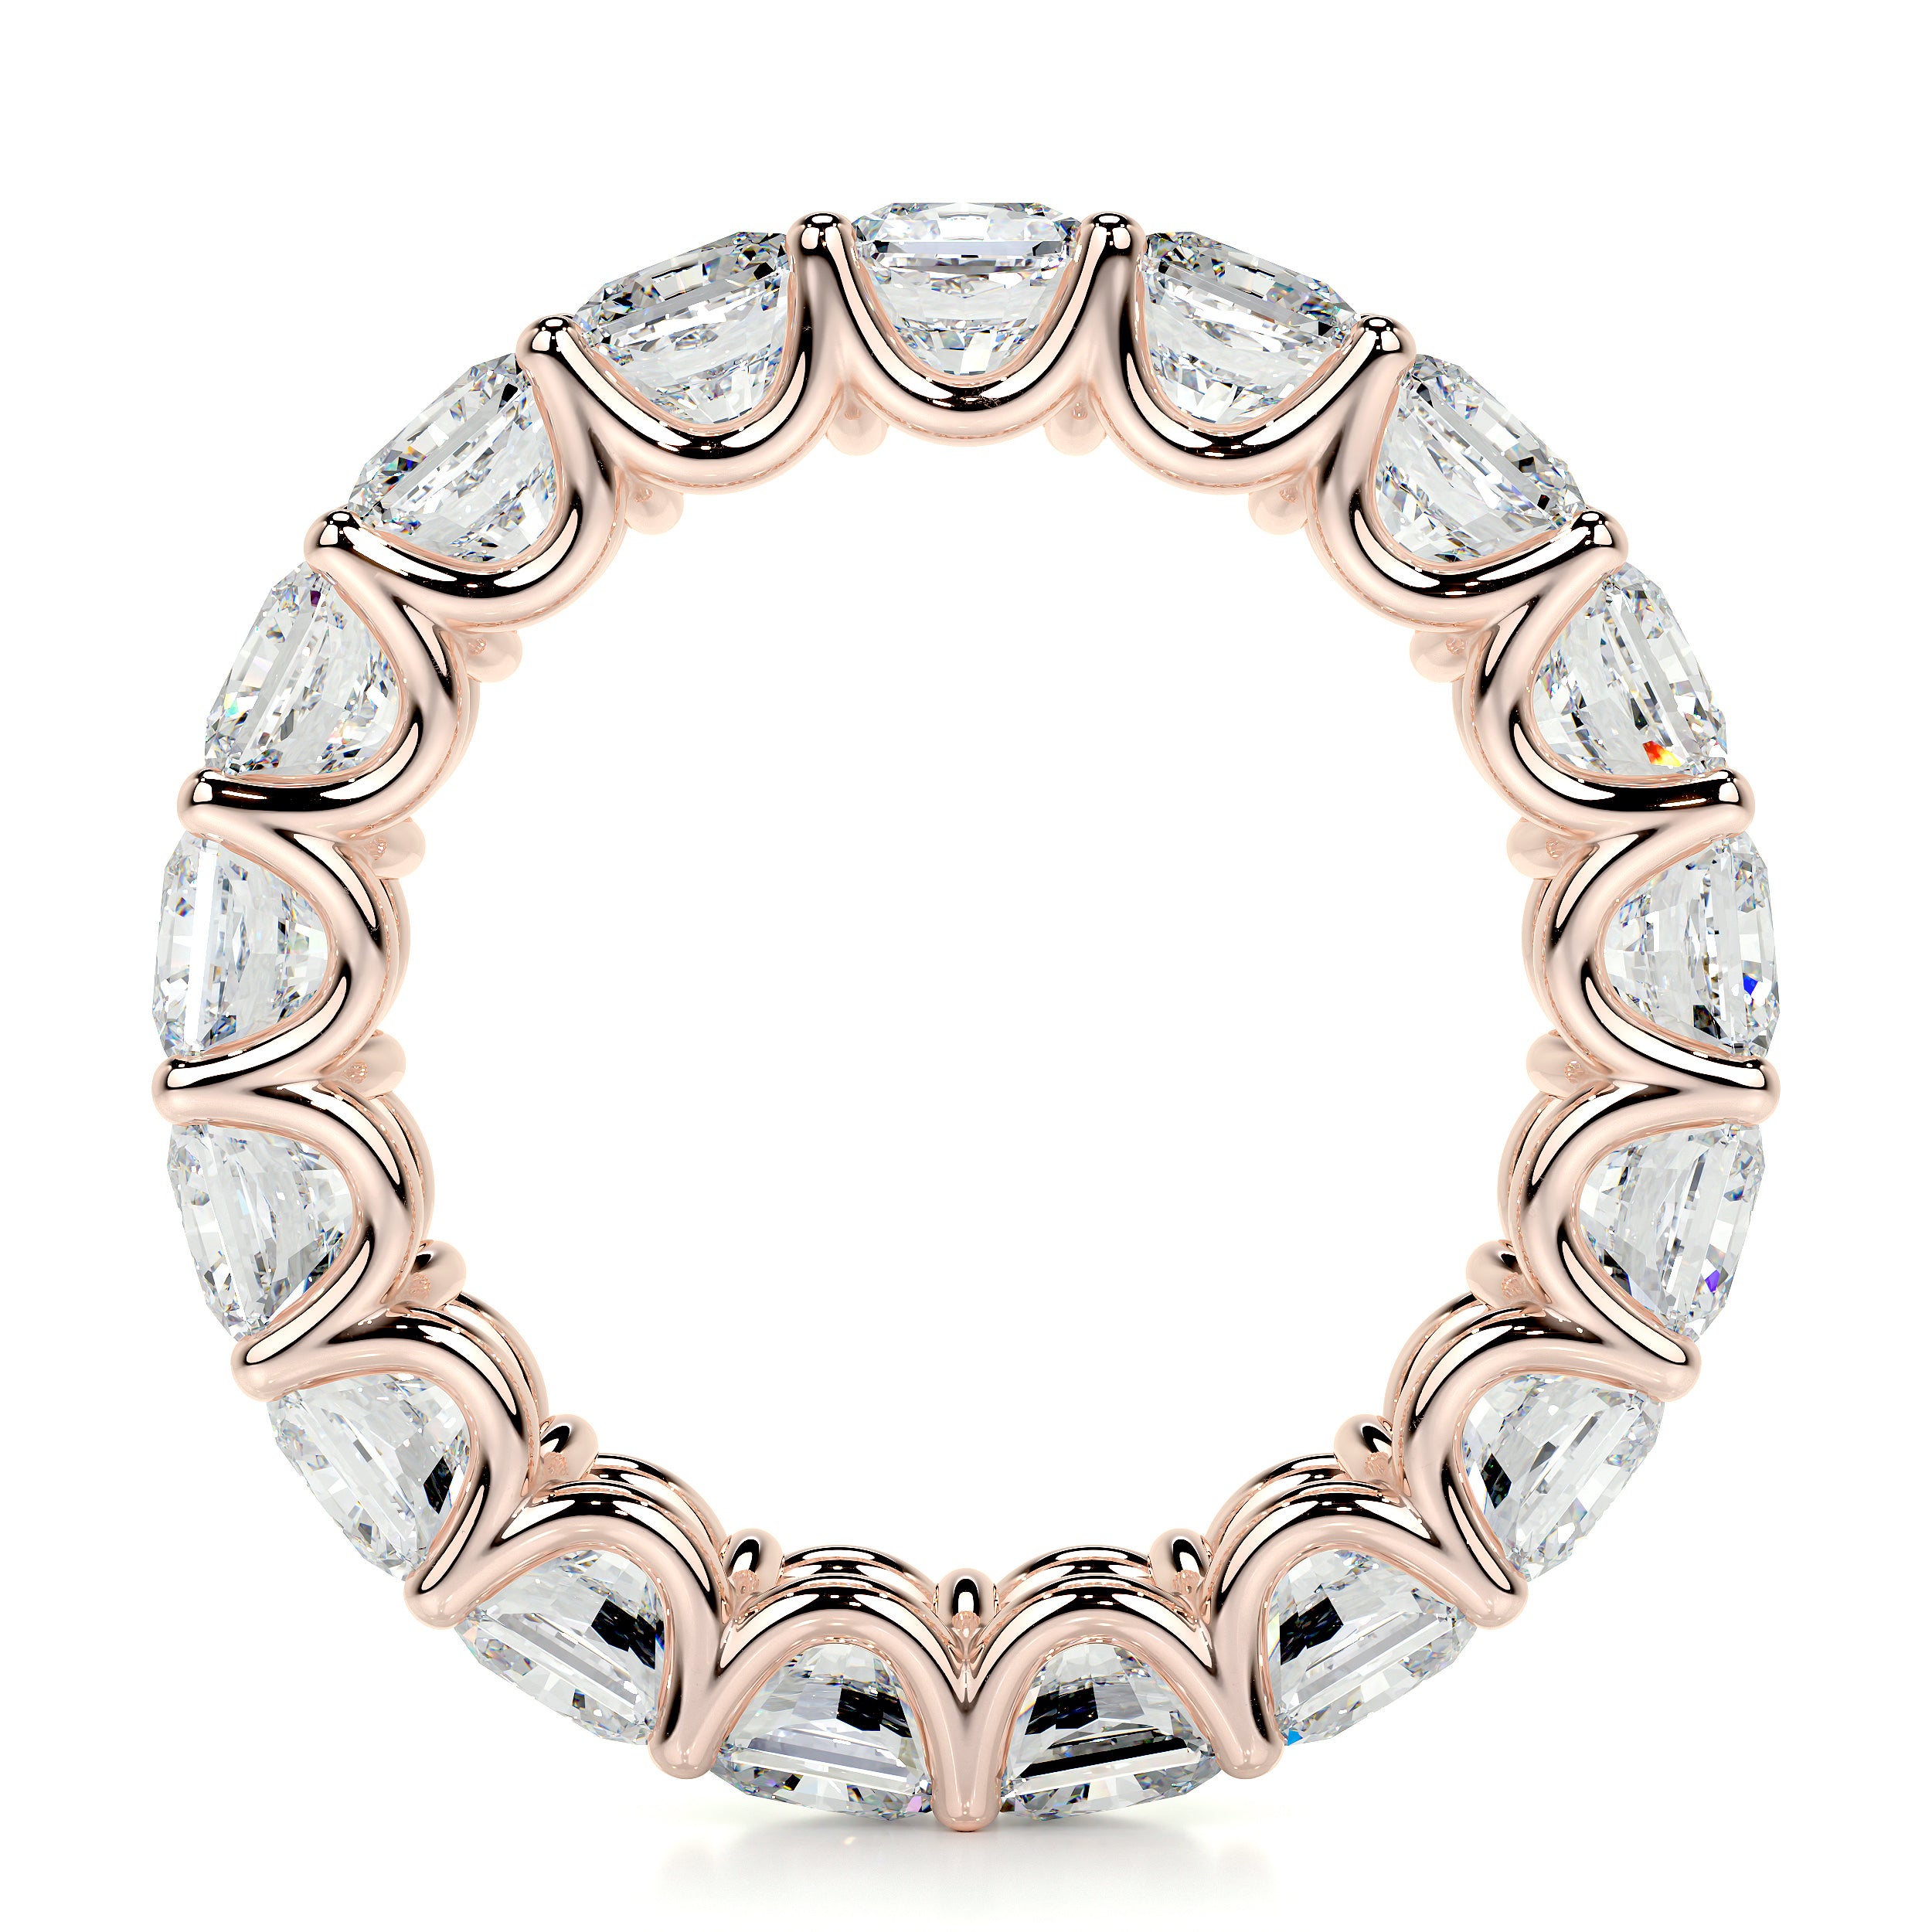 Andi Lab Grown Eternity Wedding Ring   (5 Carat) - 14K Rose Gold